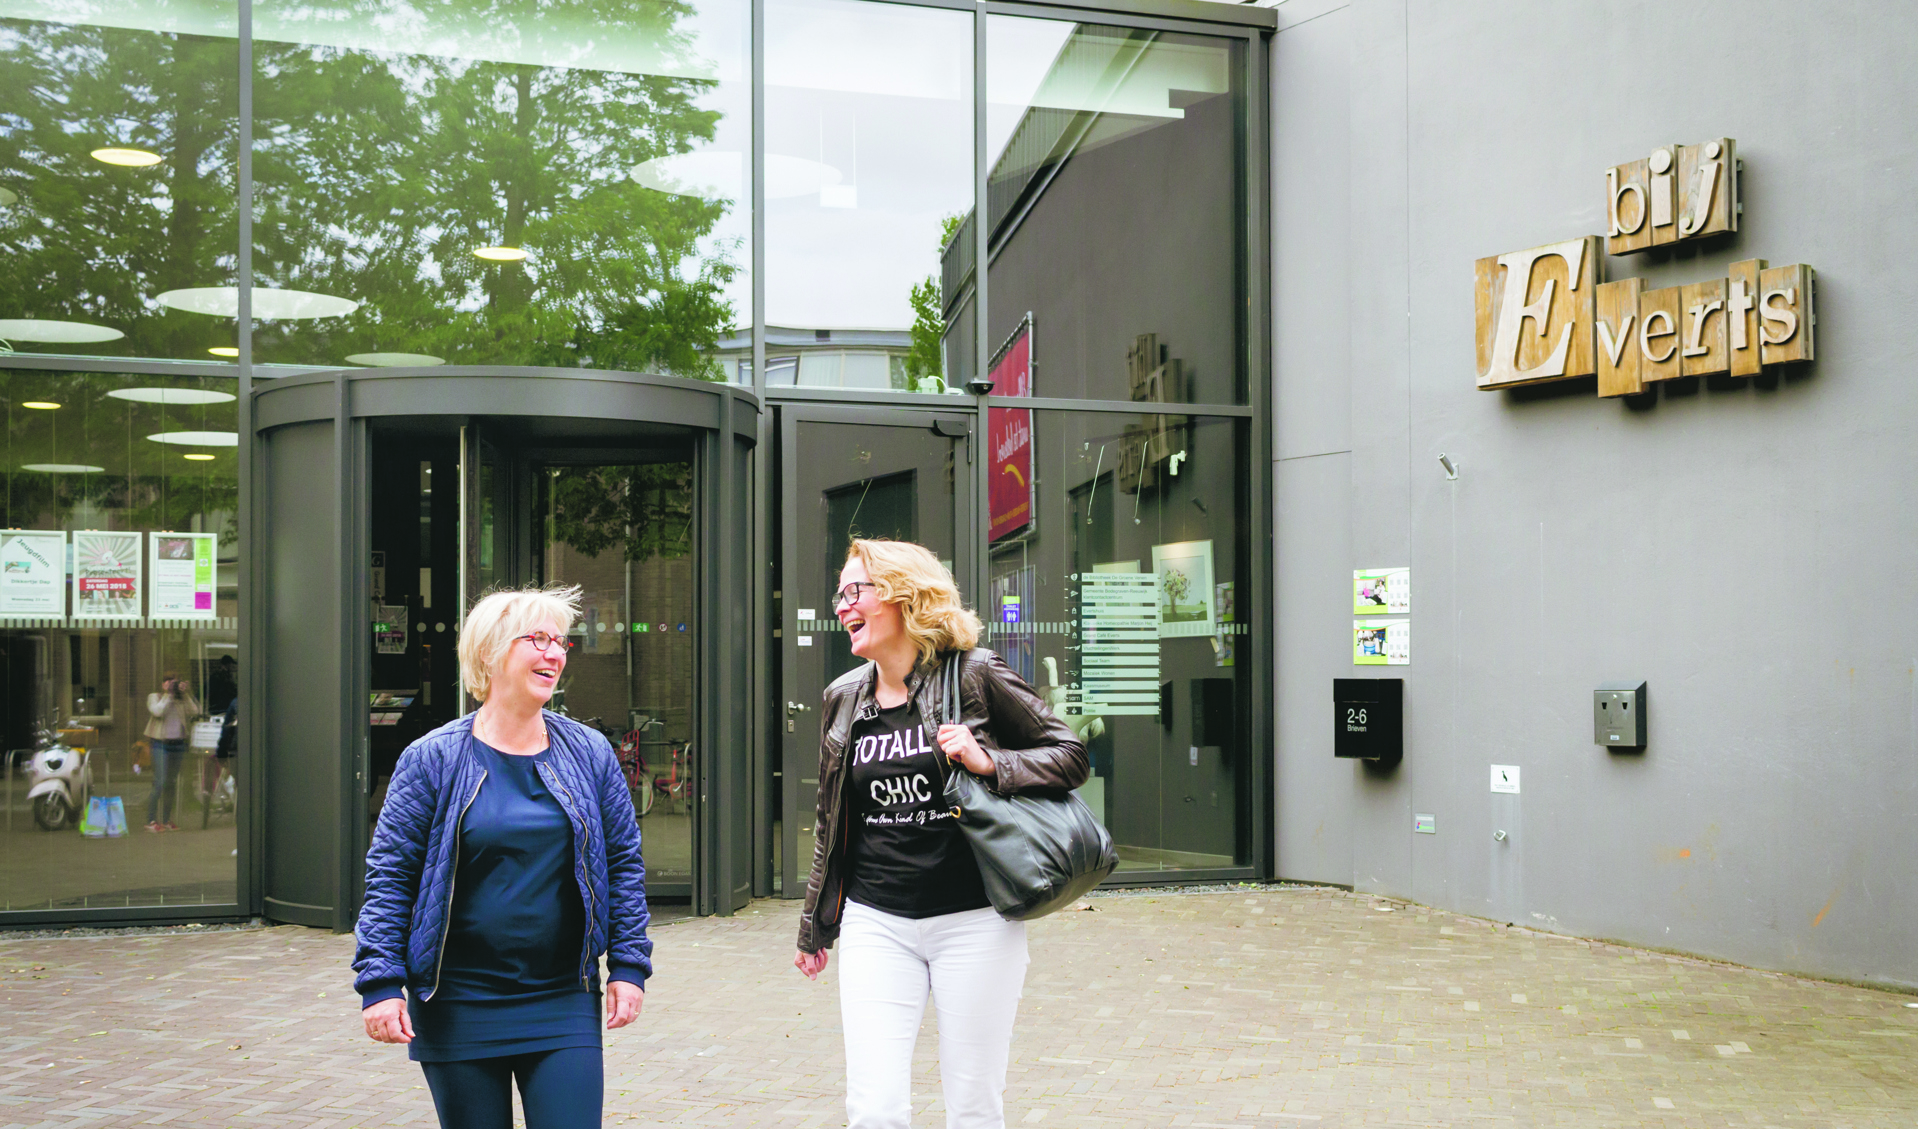 Uitkijken naar de nieuwe theatervoorstellingen in het Evertshuis, aldus Franciska Jongenotter en Rina Hampel